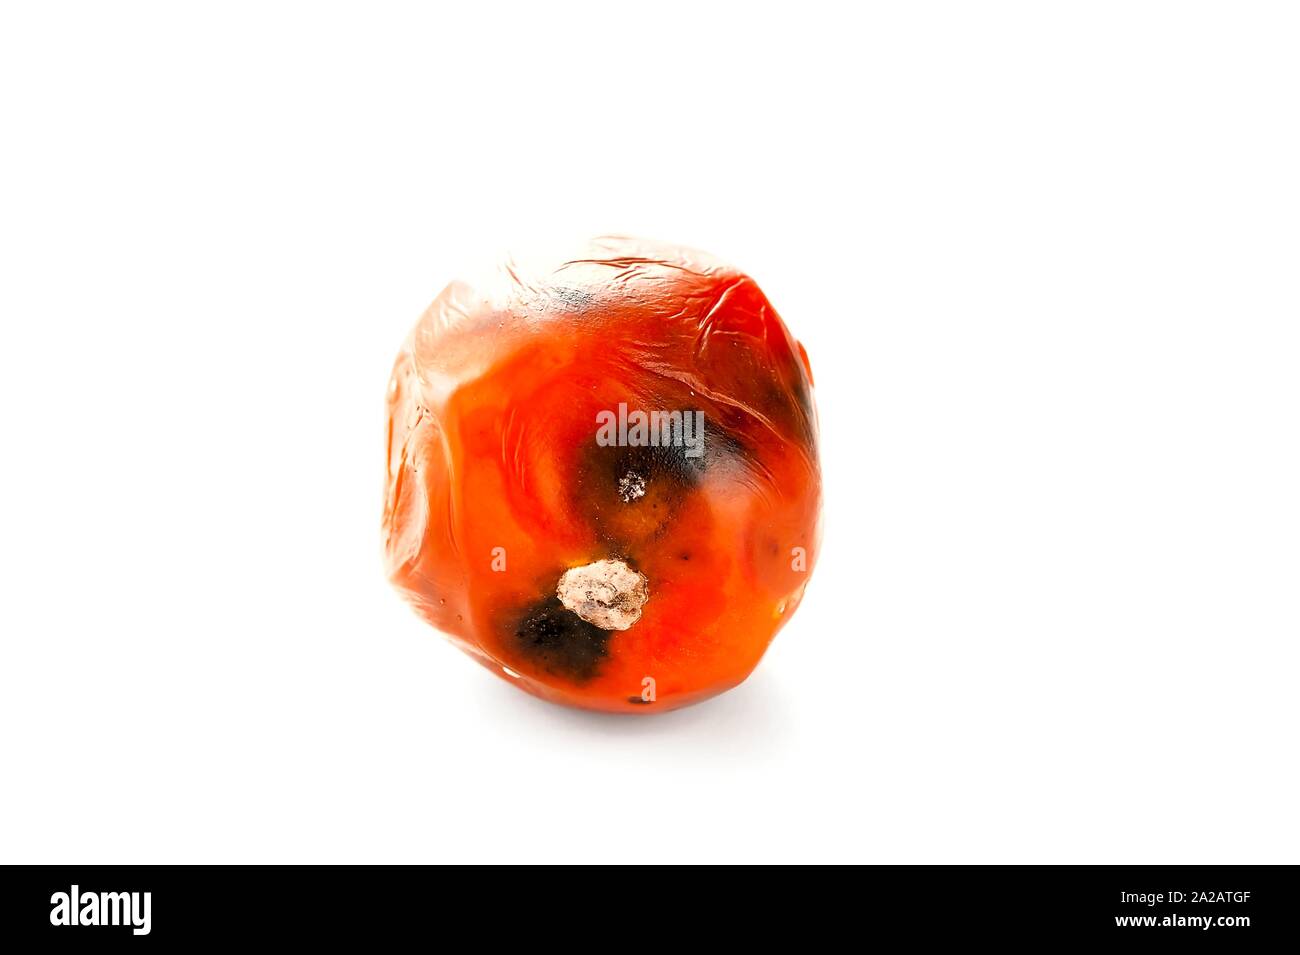 Podrido, mimado tomate con manchas en la piel del molde aislado sobre fondo blanco. Foto de stock